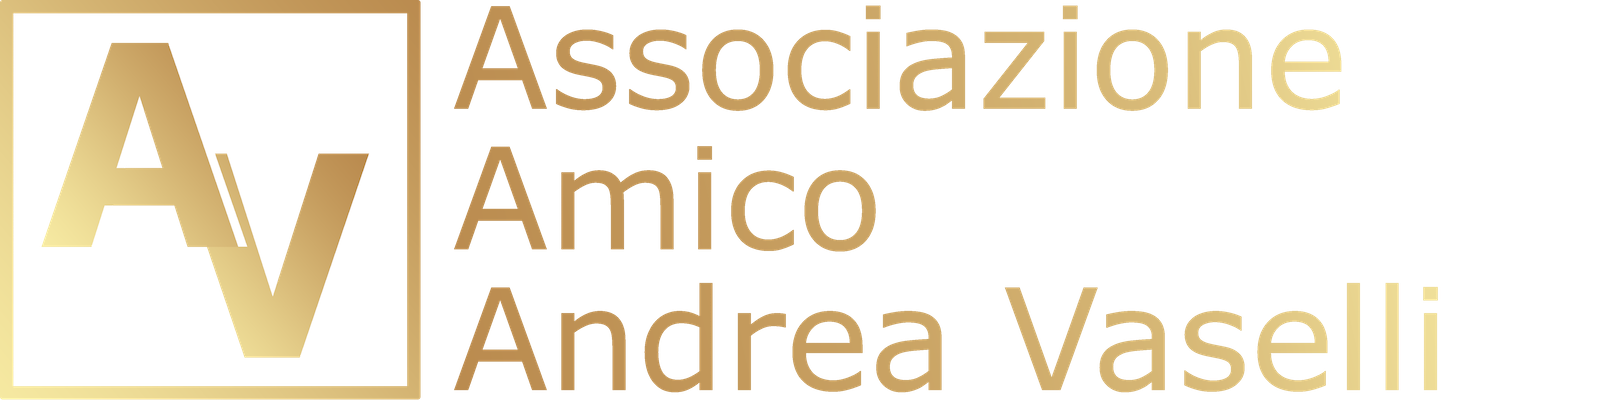 Associazione Amico Andrea Vaselli Logo